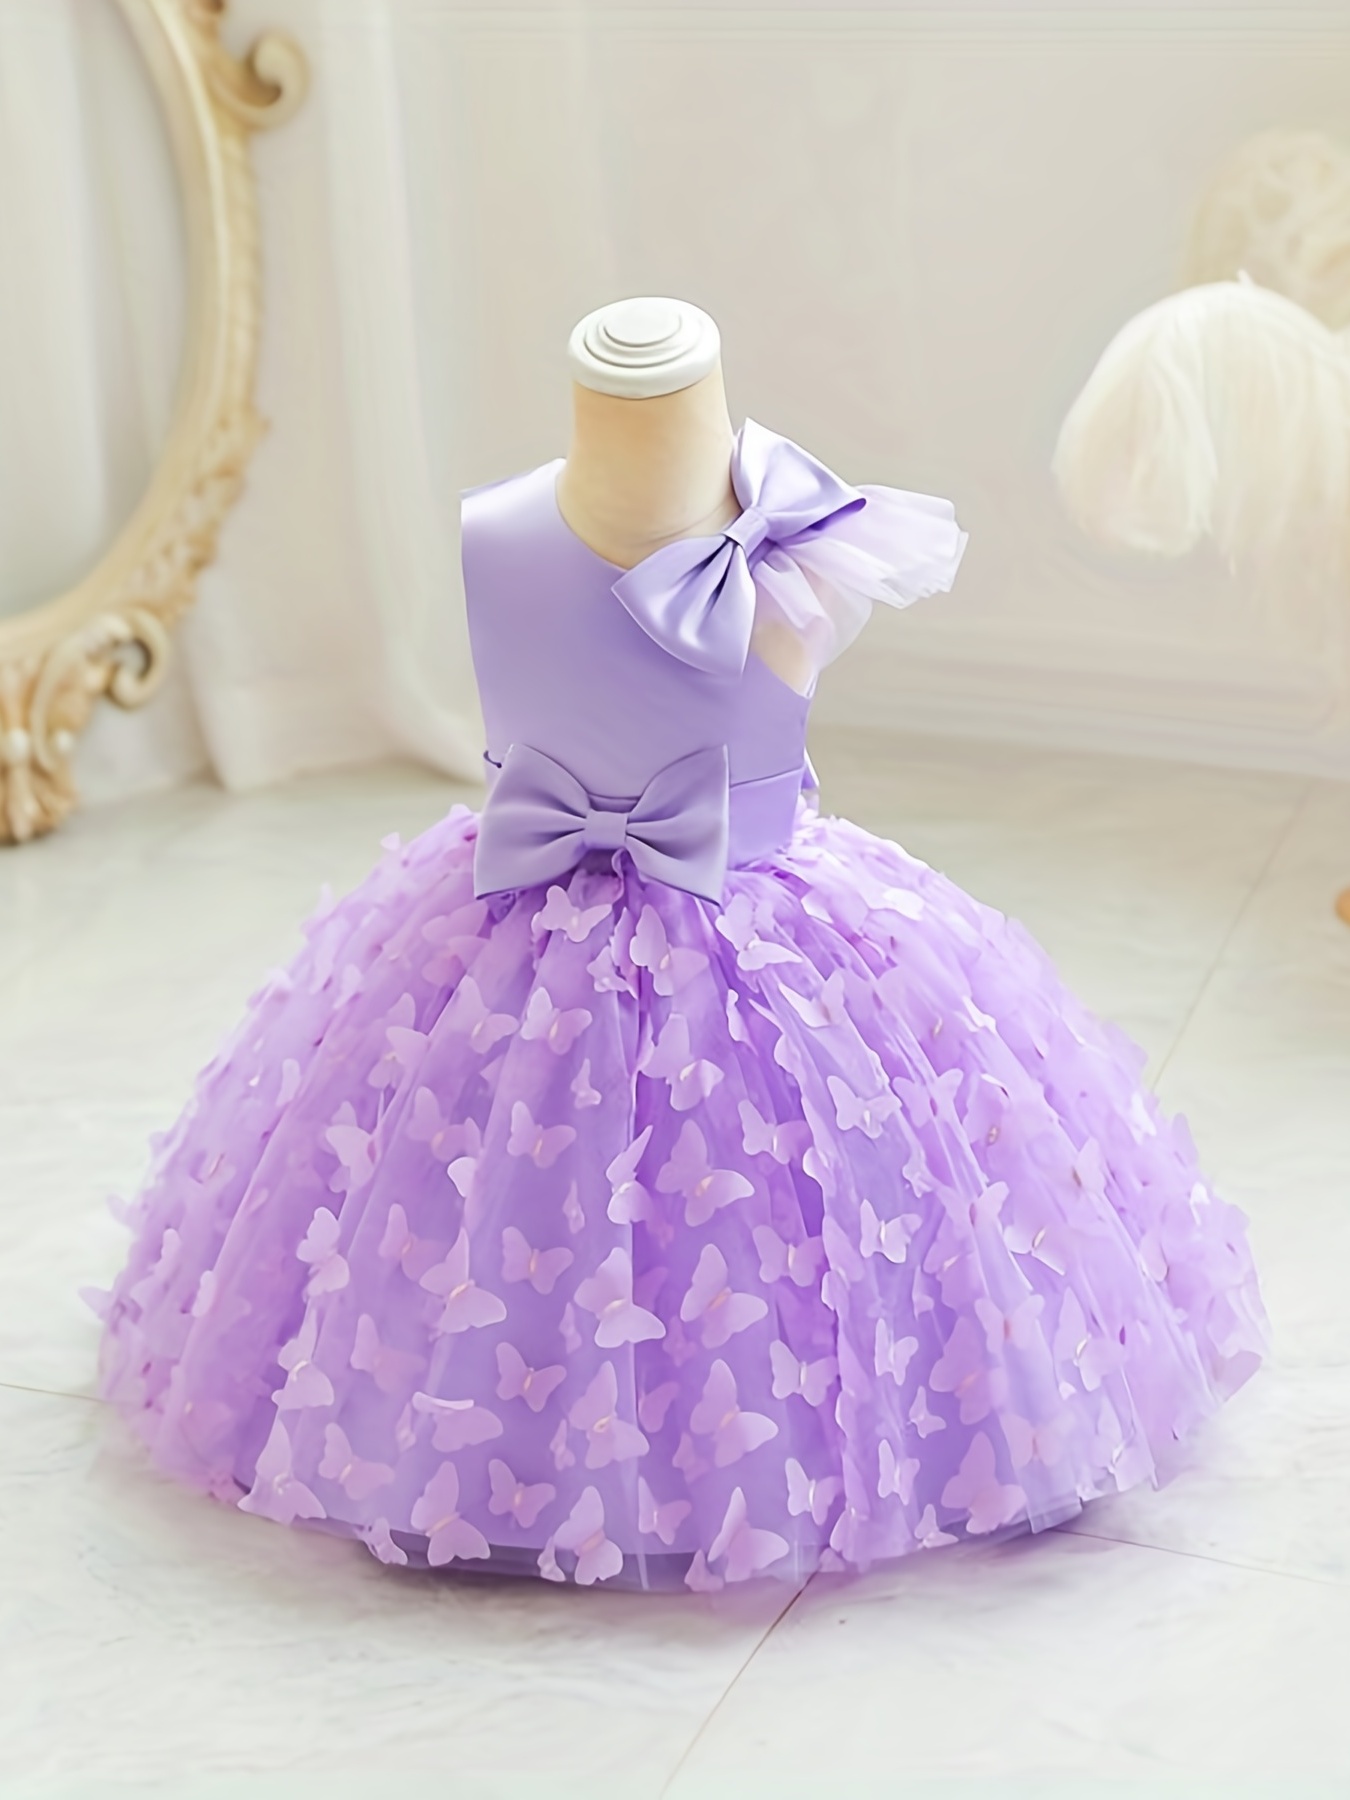 Ropa para niñas pequeñas de 1 año, bonito vestido de 2